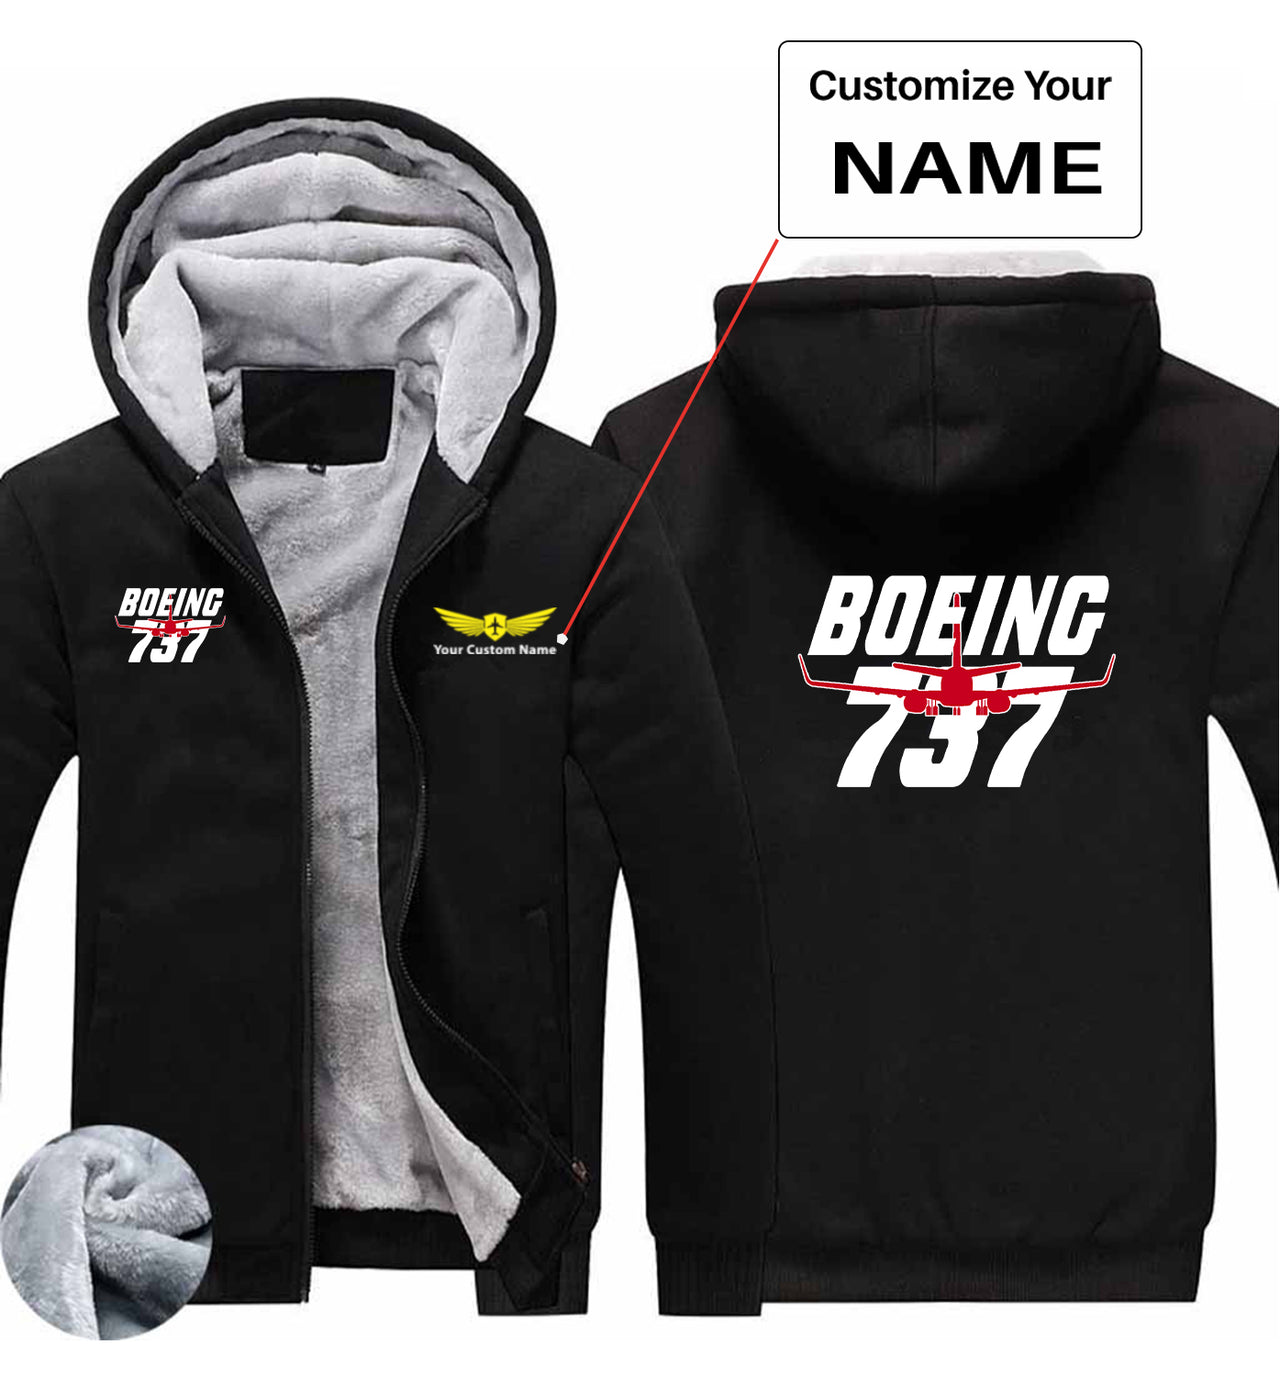 Amazing Boeing 737 Designed Zipped Sweatshirts